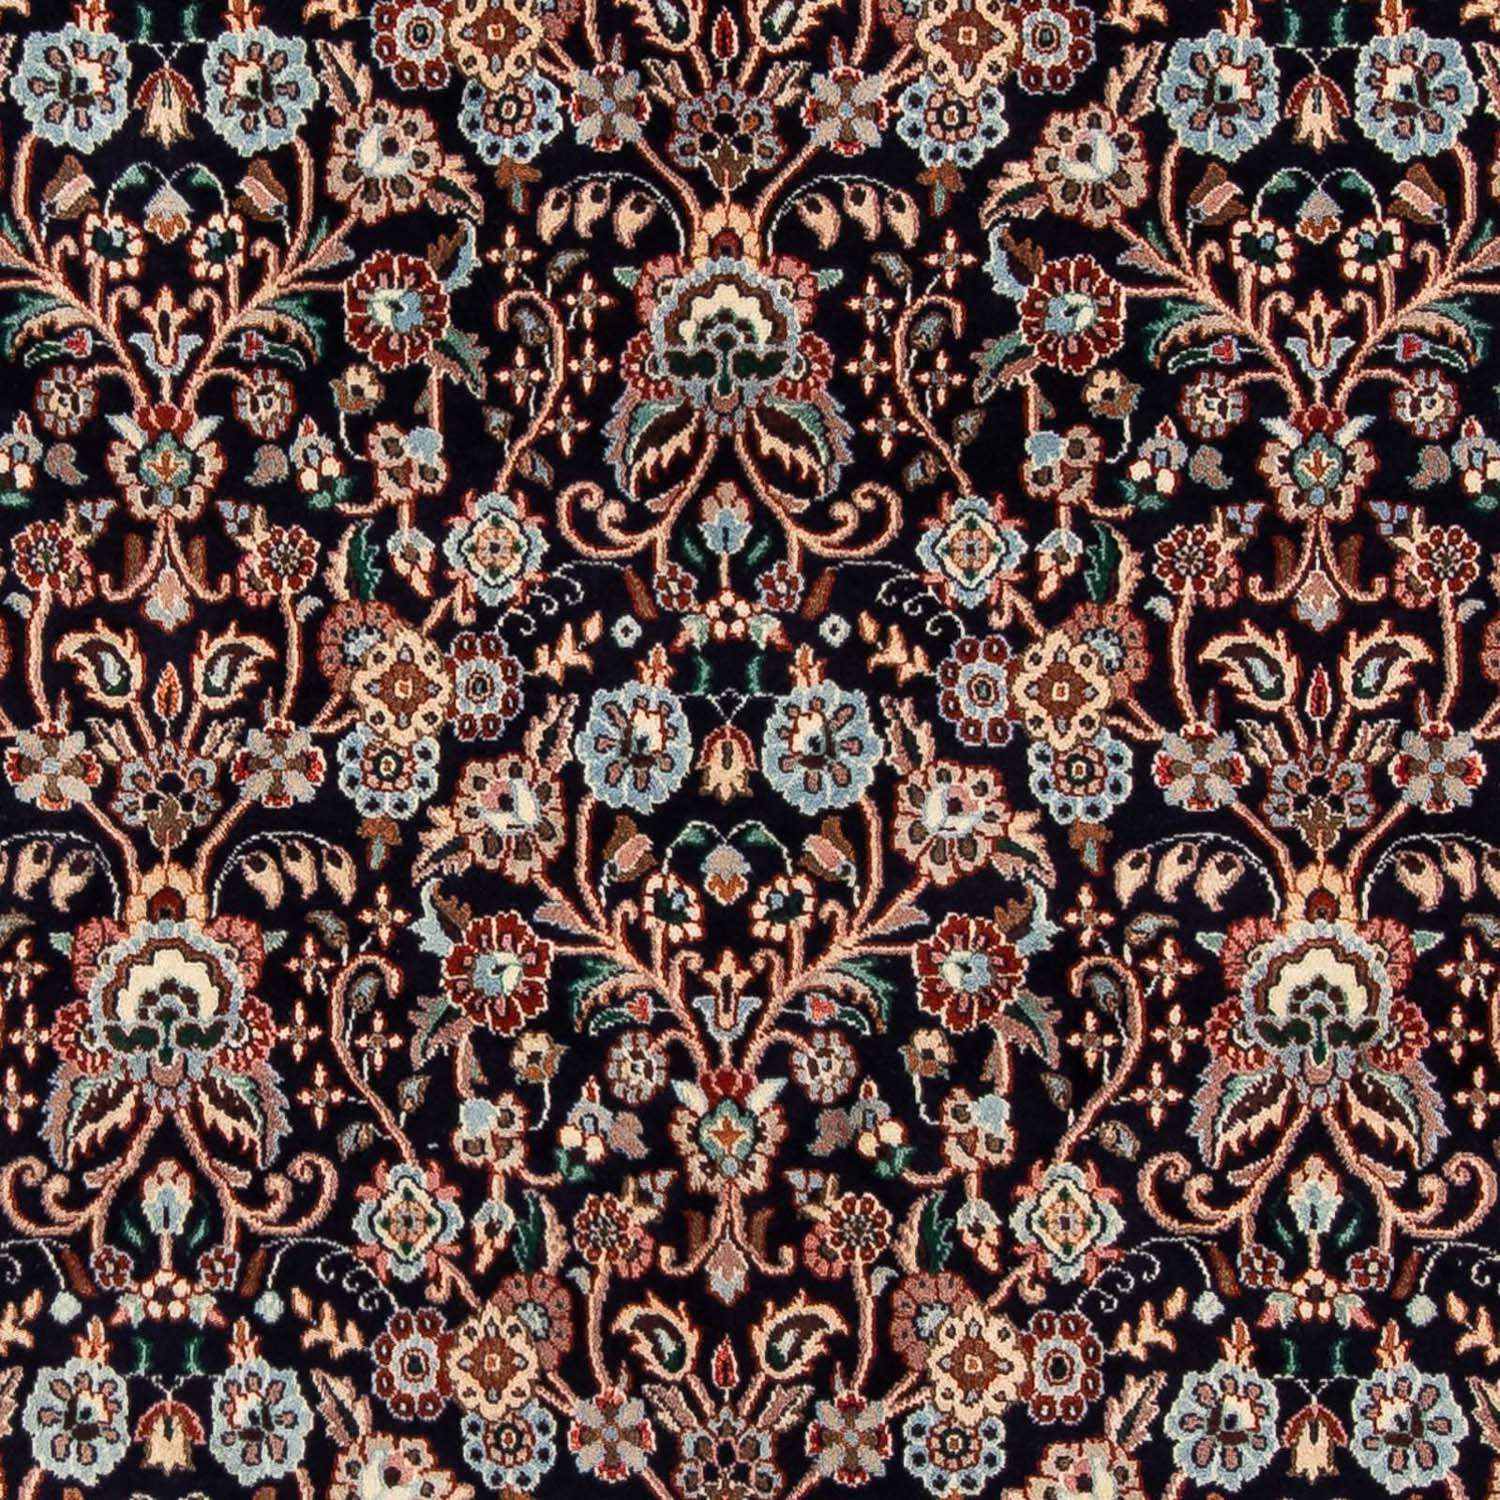 Perzisch tapijt - Klassiek - 230 x 180 cm - donkerblauw